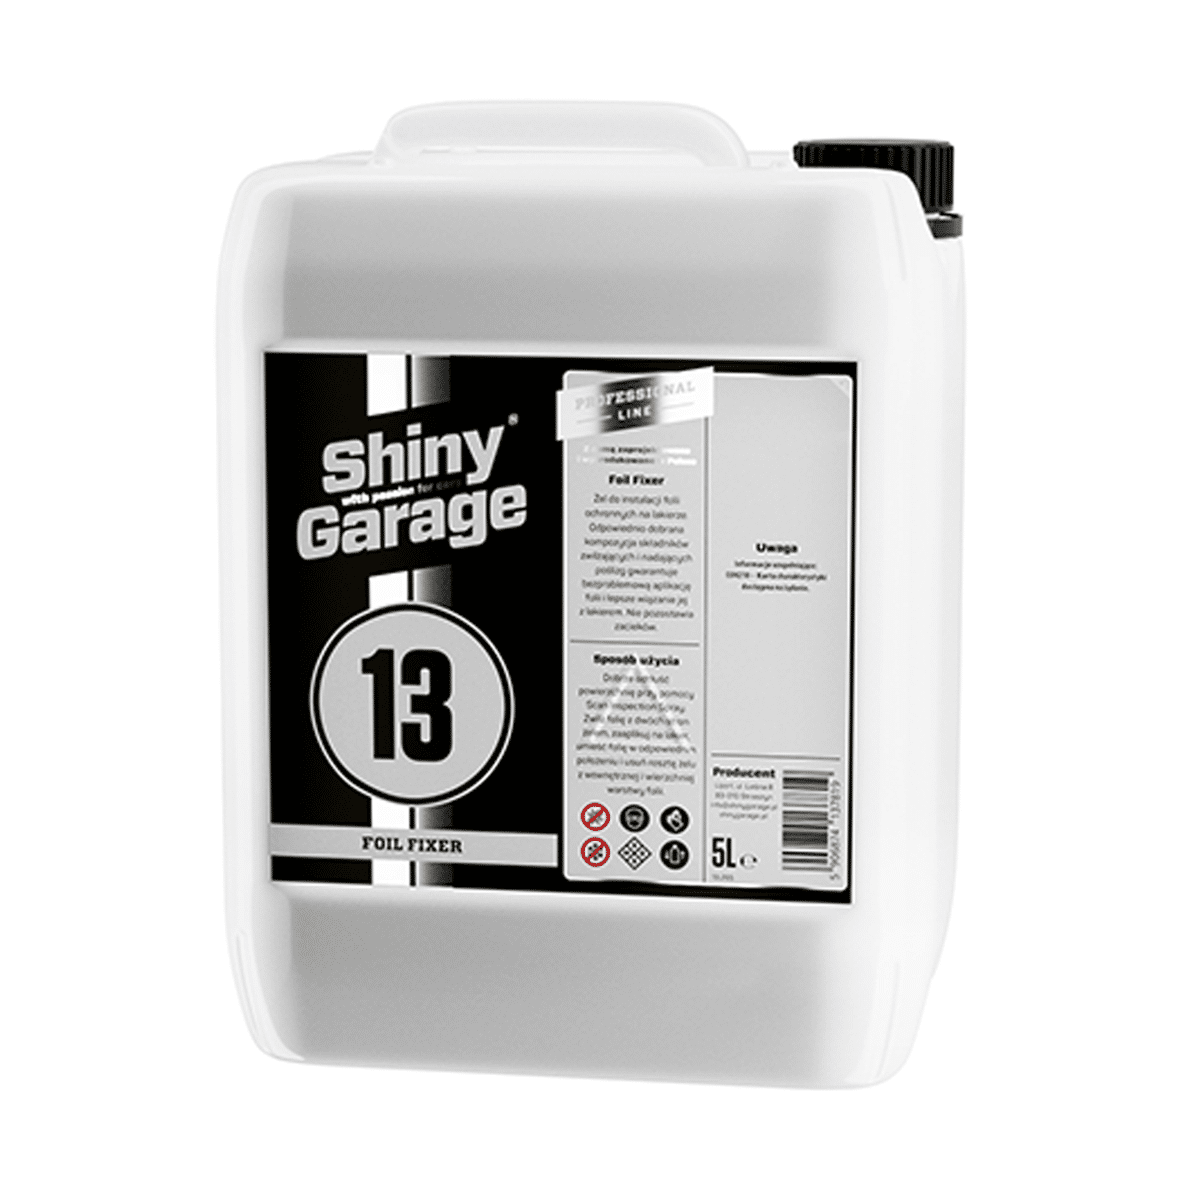 SHINY GARAGE Foil Fixer 5l Preparat do Nakładania Bezbarwnych Folii Ochronnych